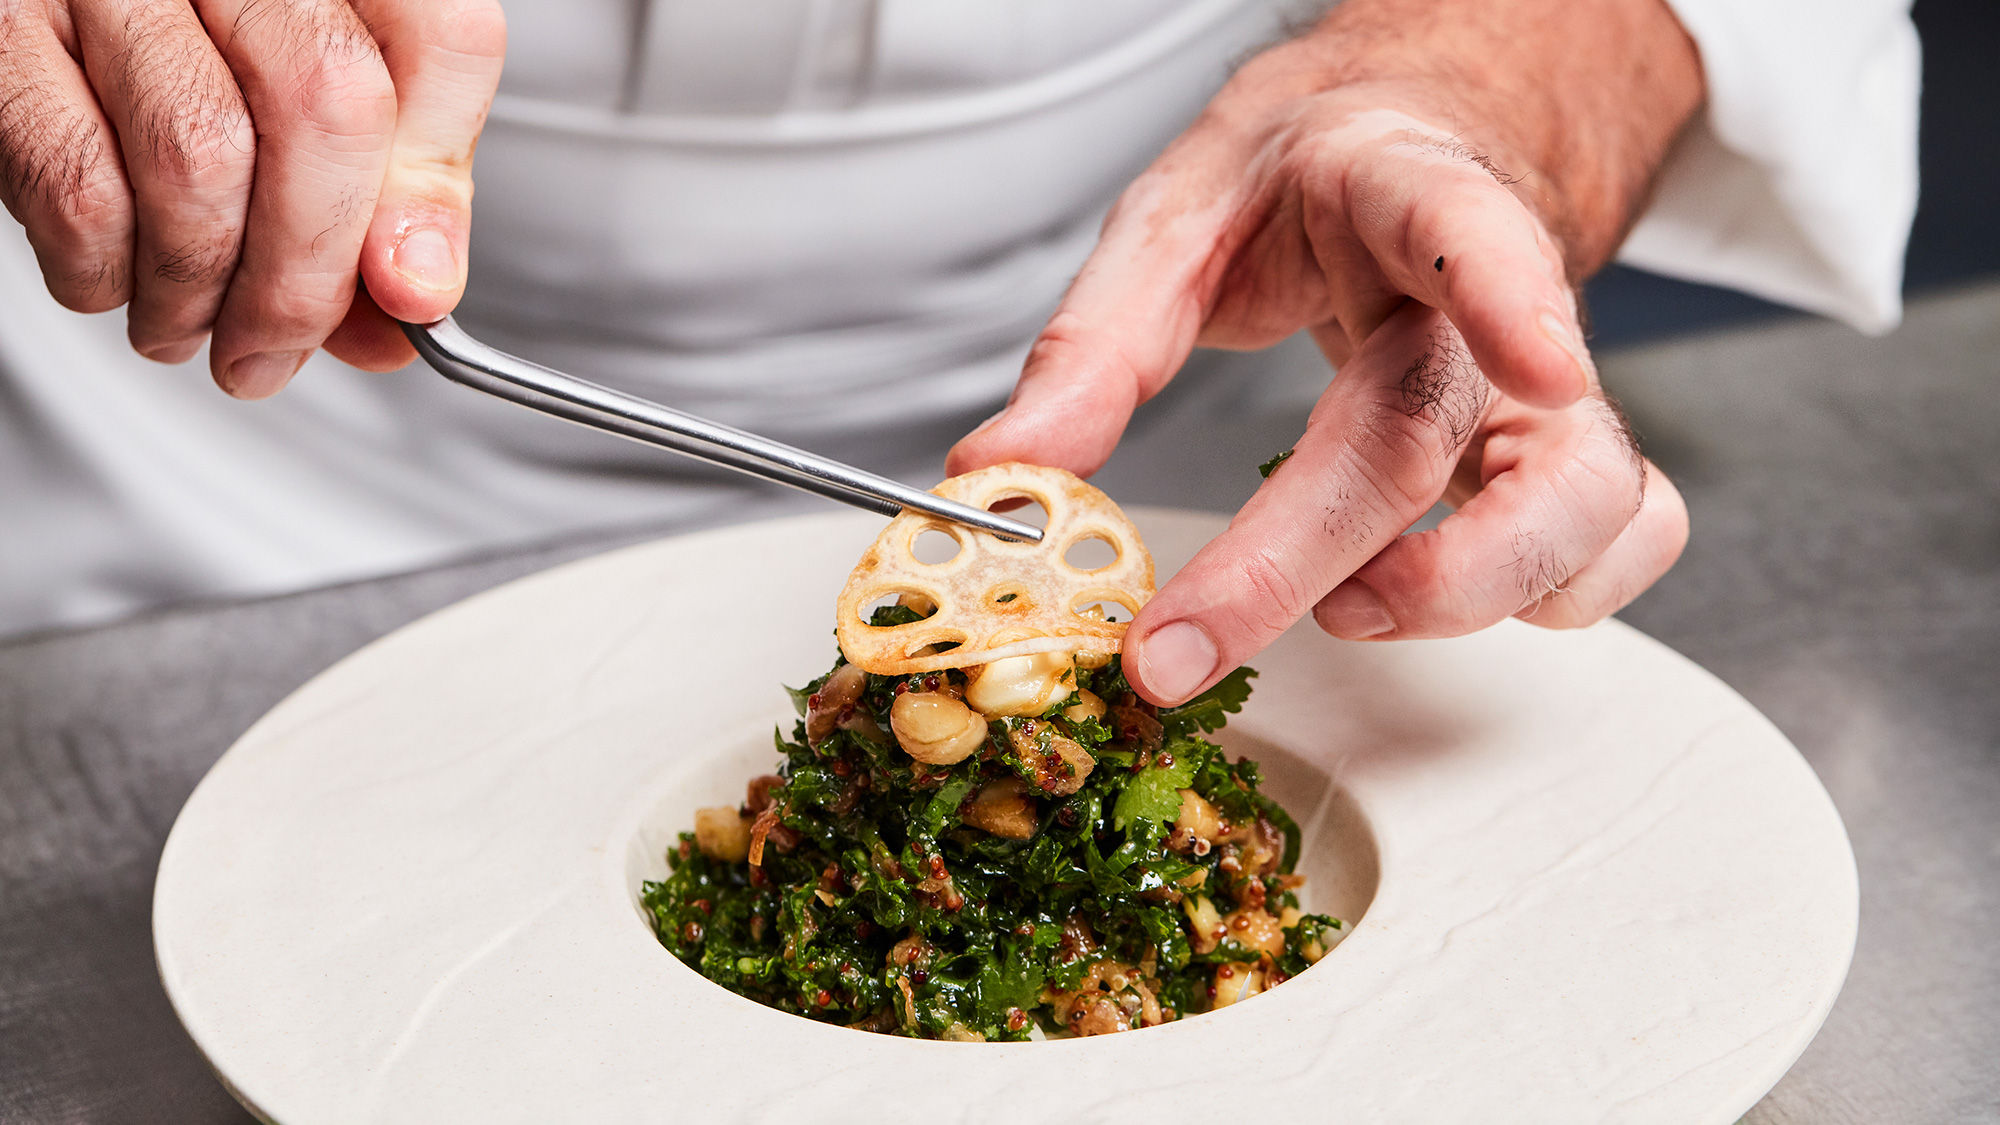 The Sakura pan-Asian restaurant will serve a kale salad.